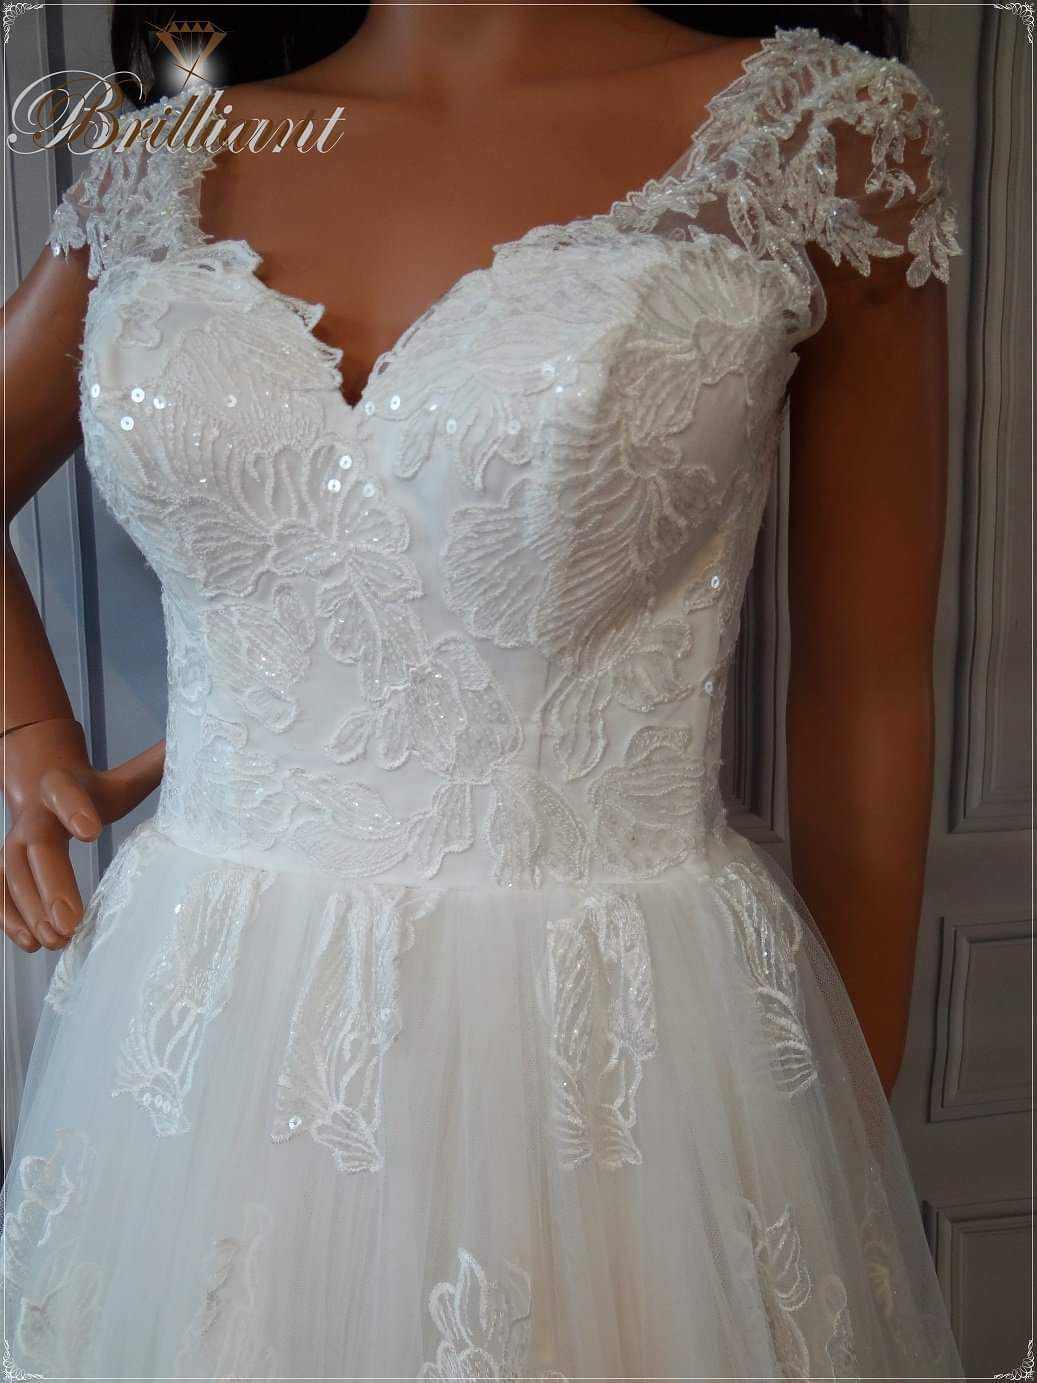 Piękna suknia ślubna ivory z rozporkiem i koronką